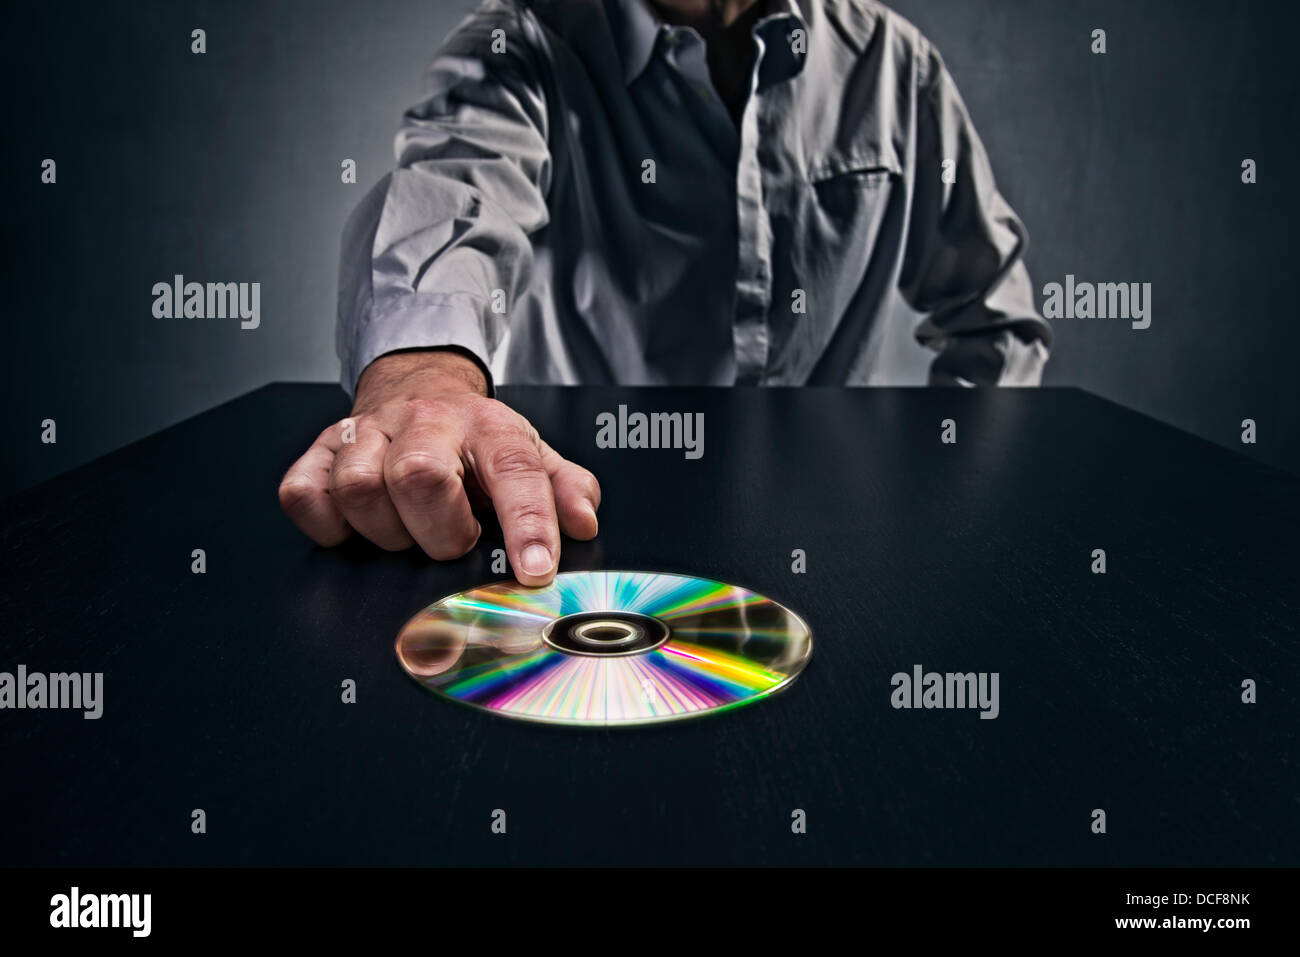 L'uomo spingendo un CD con i dati in una tabella, che simboleggiano il passaggio dei dati segreti. Foto Stock